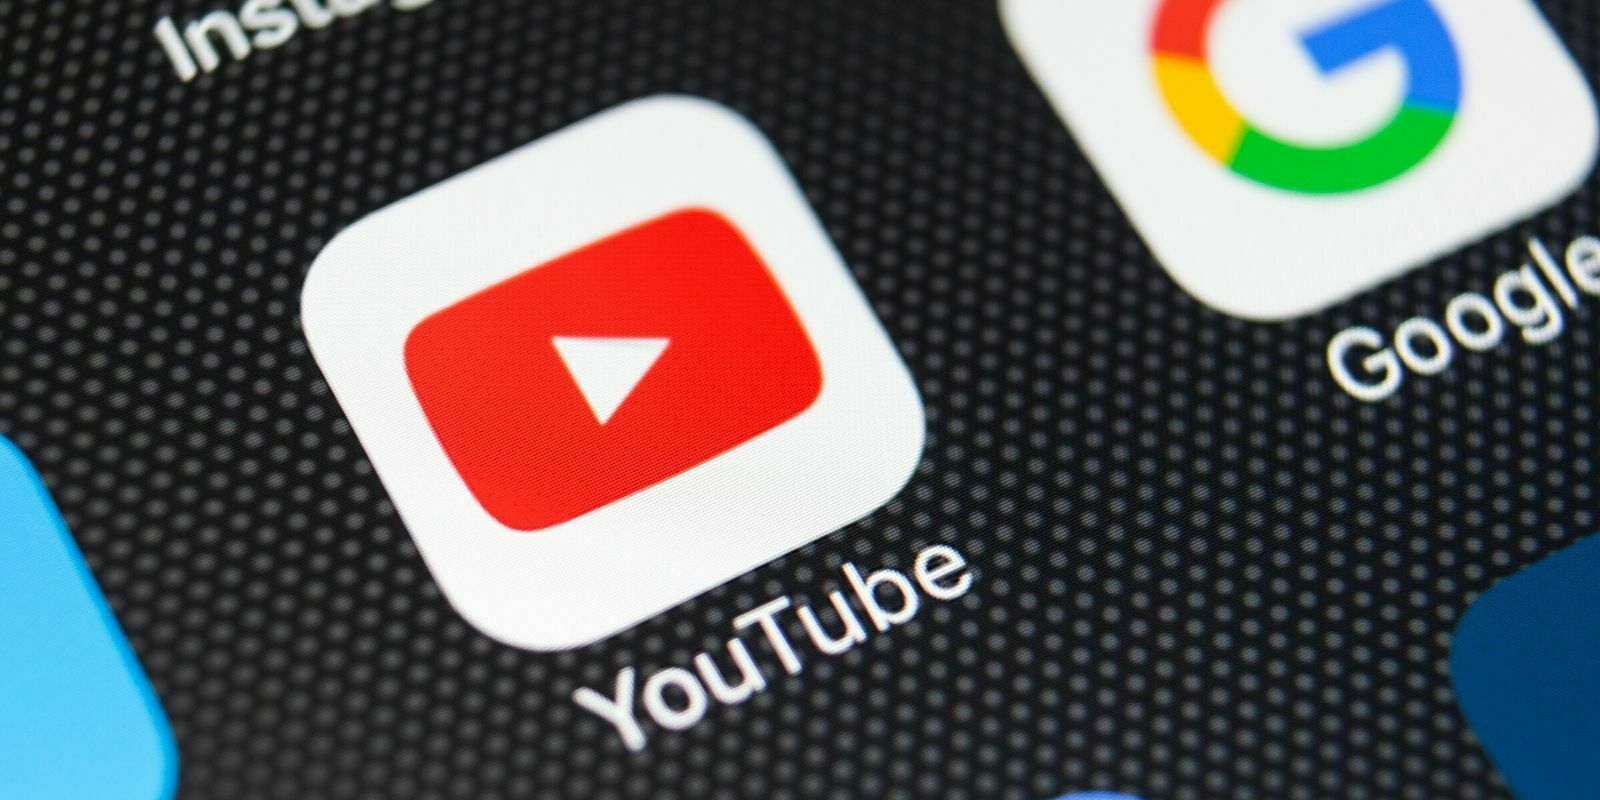 YouTube supprime des vidéos liées aux cryptos en mentionnant un “contenu dangereux ou nuisible”